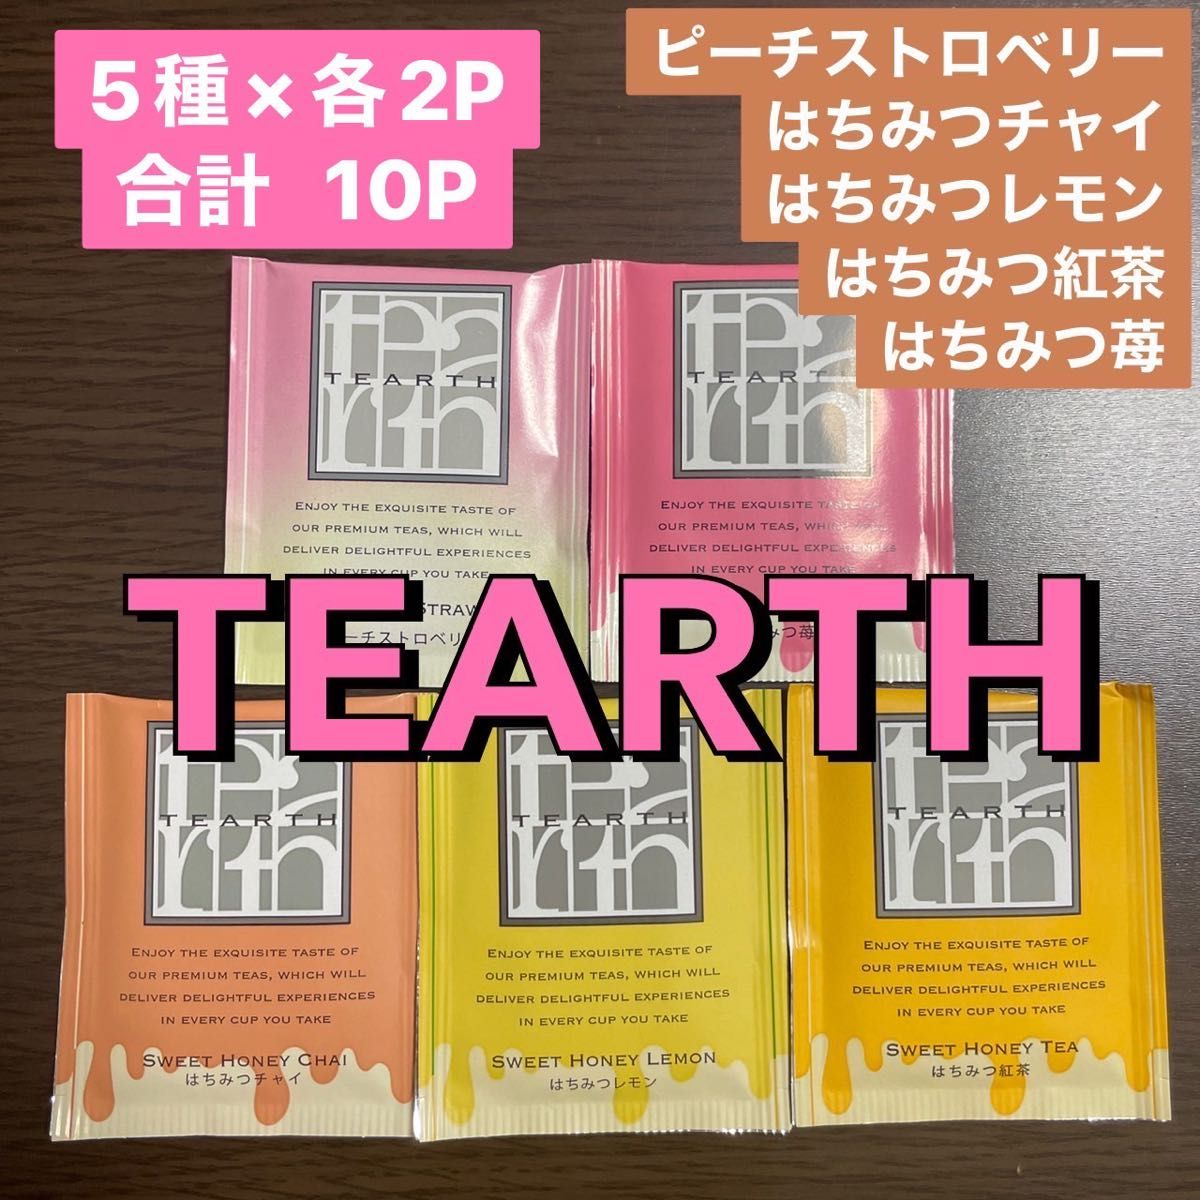 【101】TEARTH 10P はちみつ紅茶 5種類×各2P